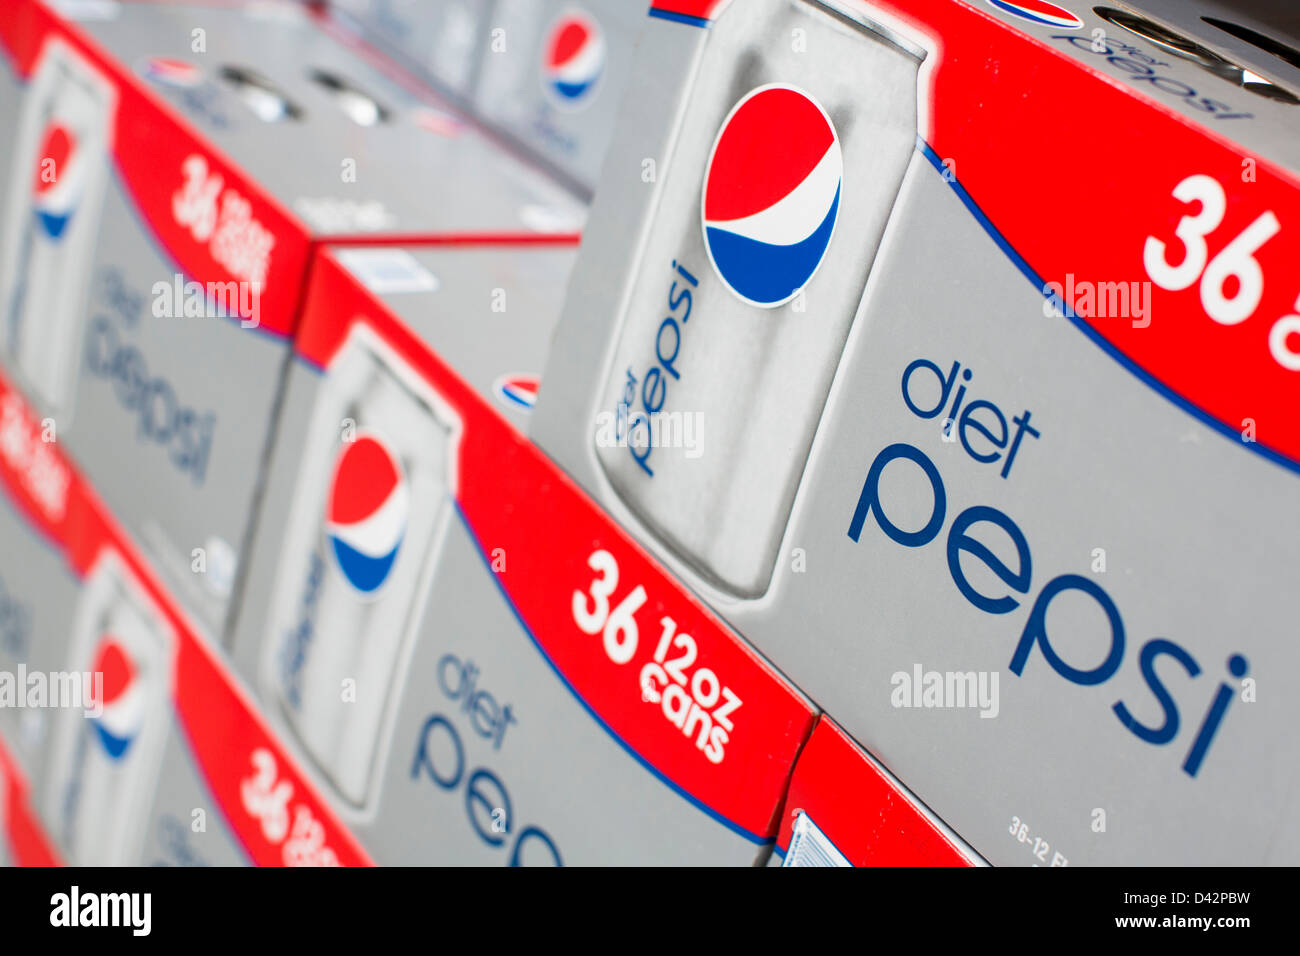 Pepsi diète sur l'affichage à un entrepôt Costco Wholesale Club. Banque D'Images